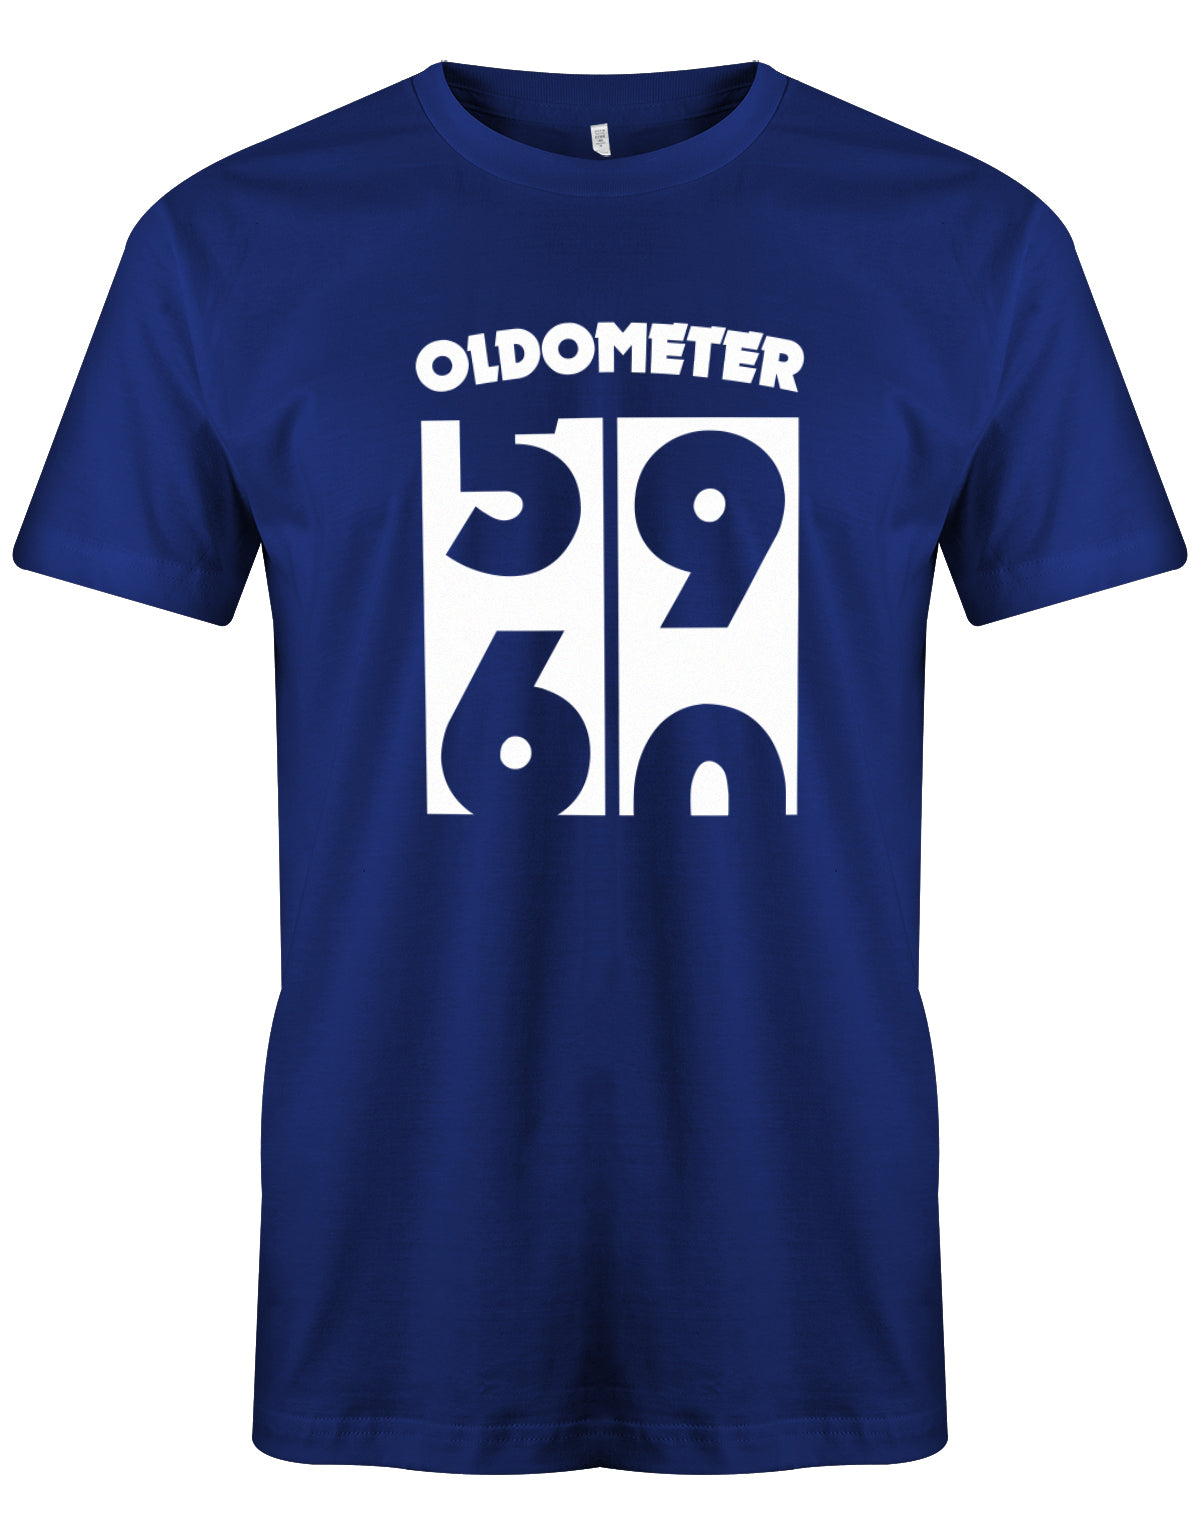 Lustiges T-Shirt zum 60. Geburtstag für den Mann Bedruckt mit Oldometer der wechsel von der 59 zu 60 Jahren. royalblau